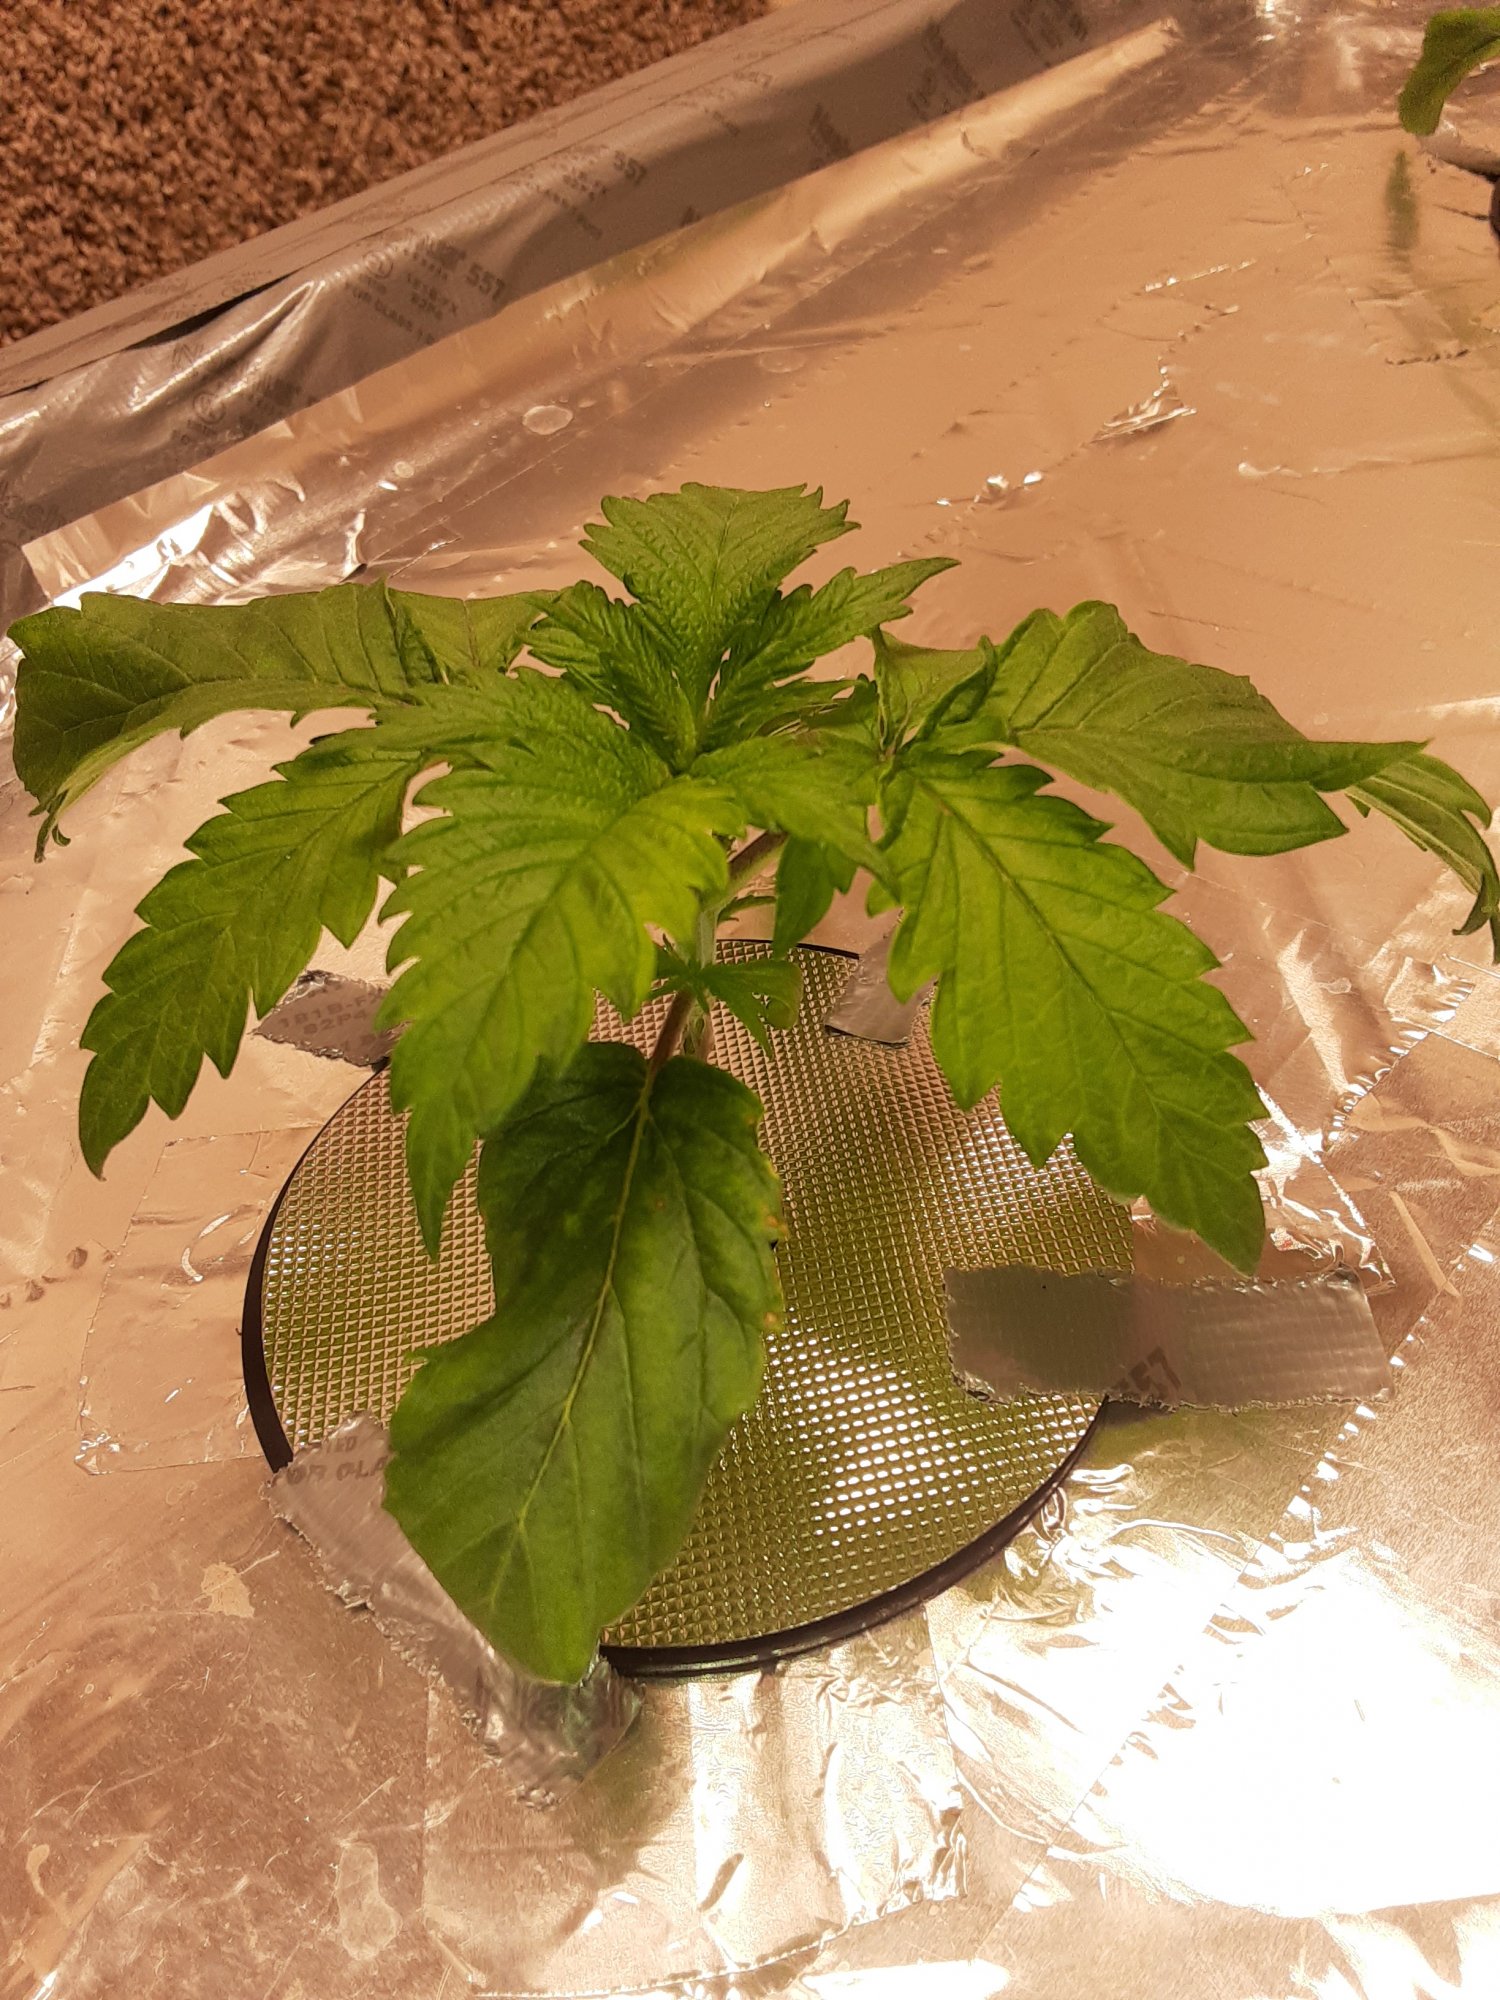 Any ideas with my grow